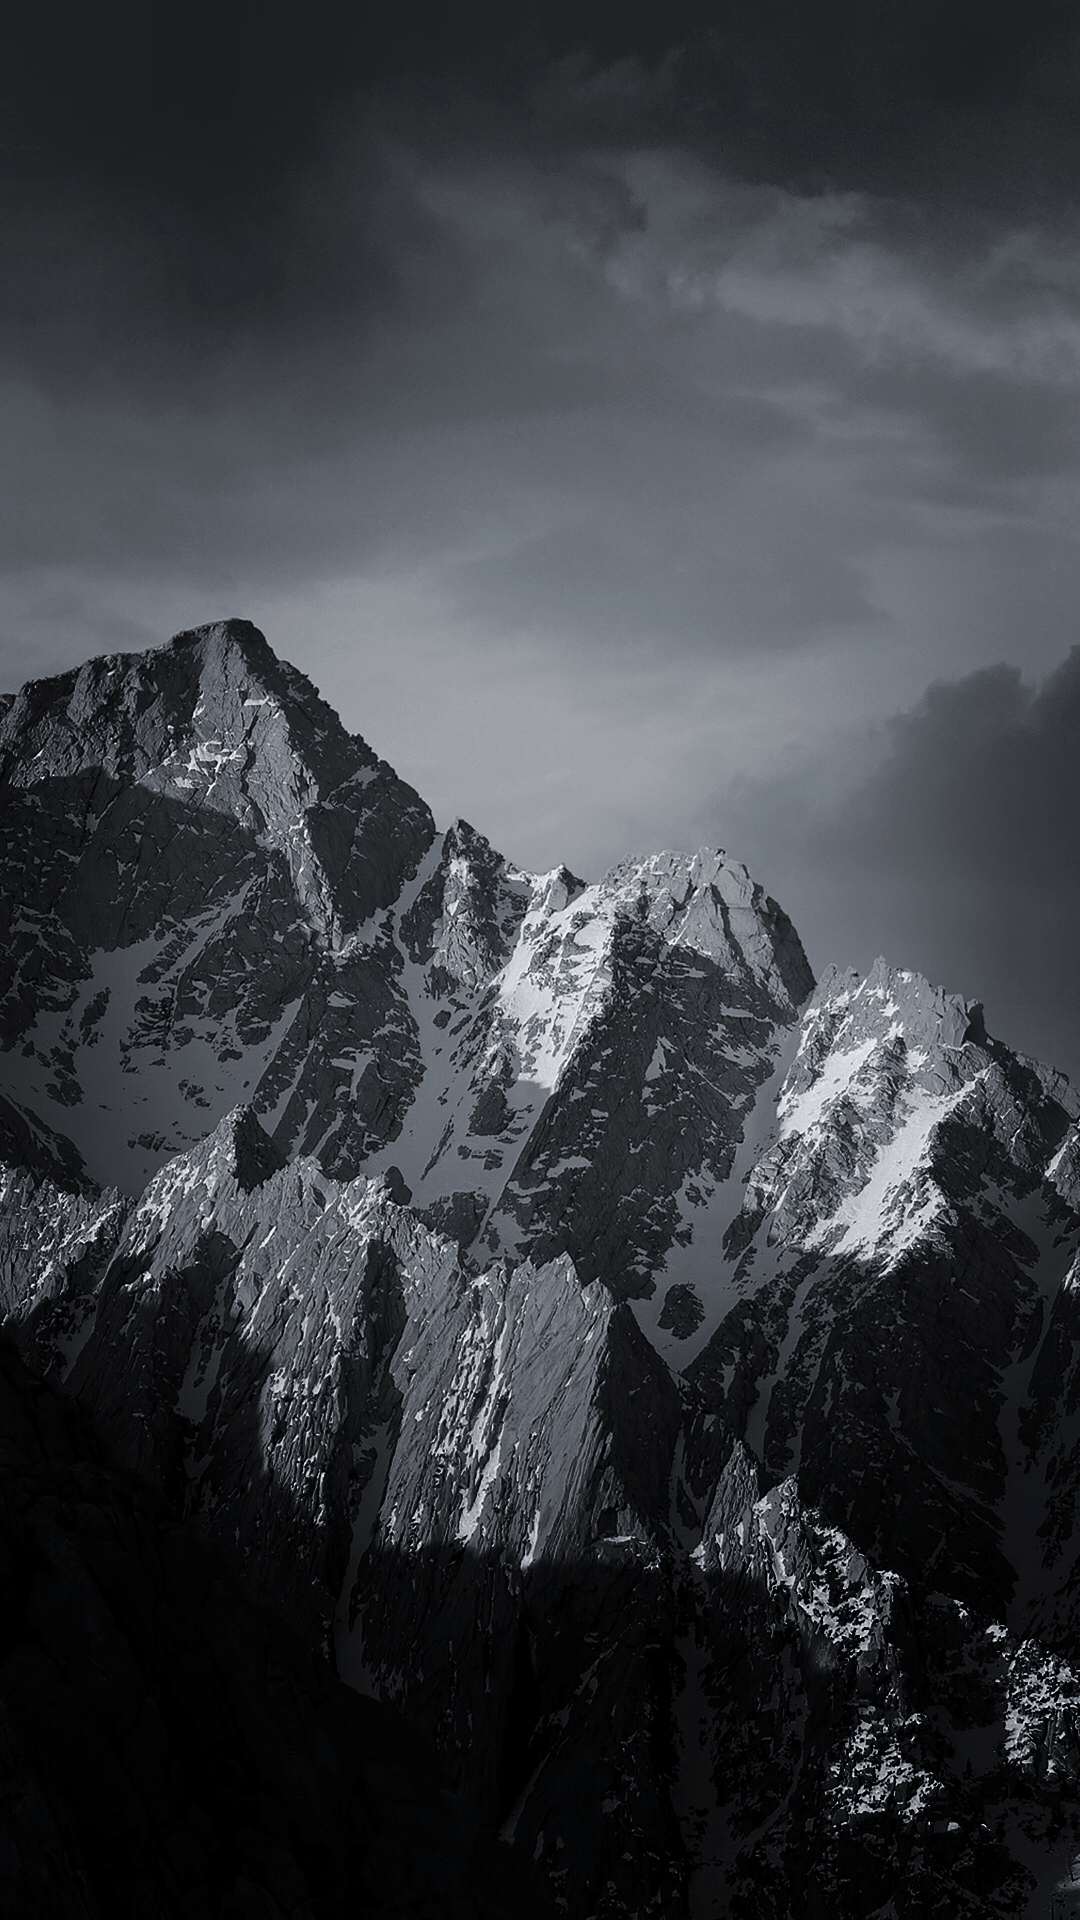 Dark Mountains Images  Free Download on Freepik